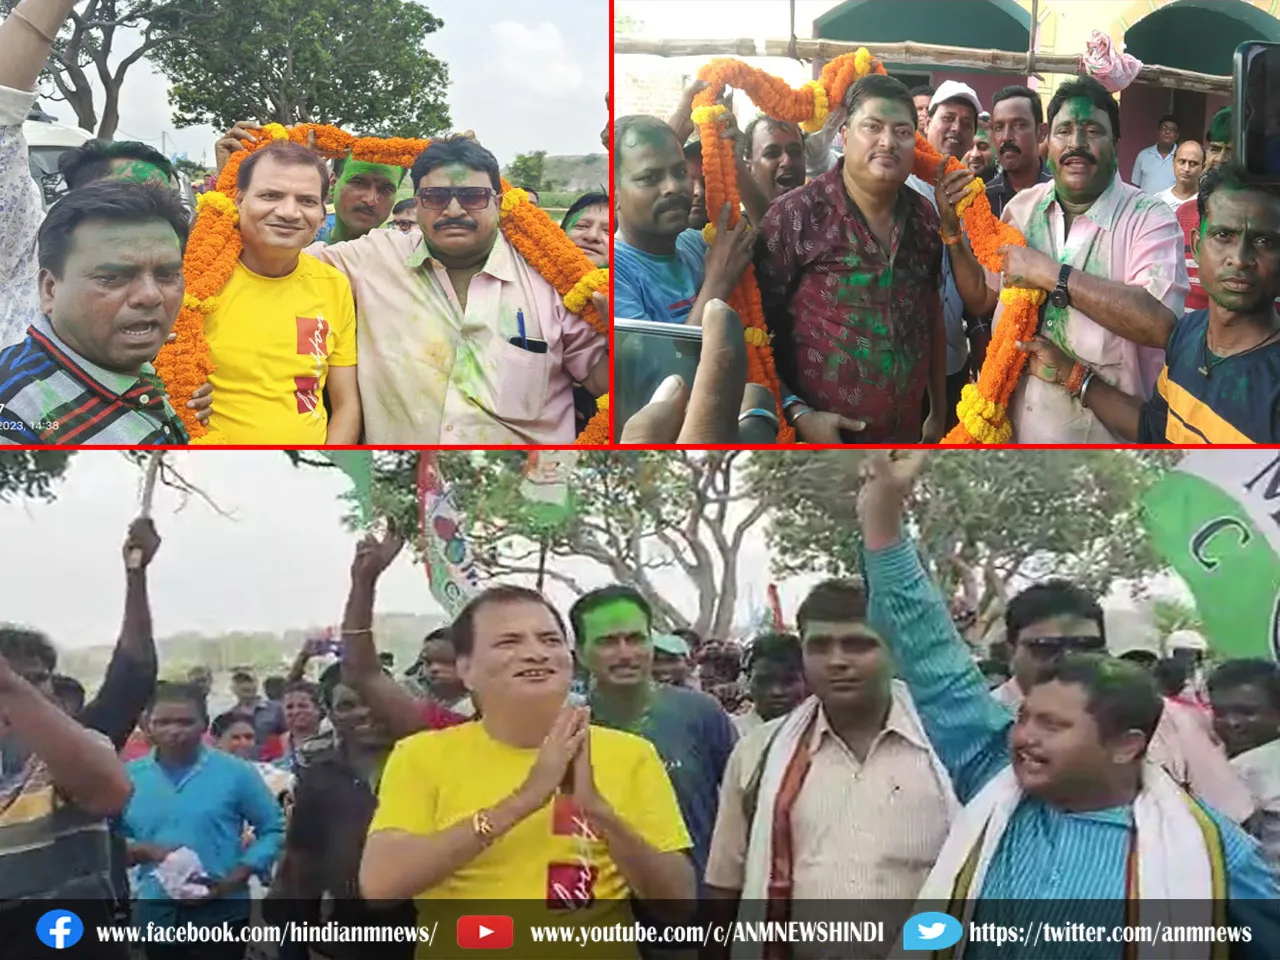 WB panchayat election result 2023 : हरे रंग में रंगी बाराबनी एंव सालानपुर, पंचायत चुनाव में तृणमूल को मिली एक तरफा जीत